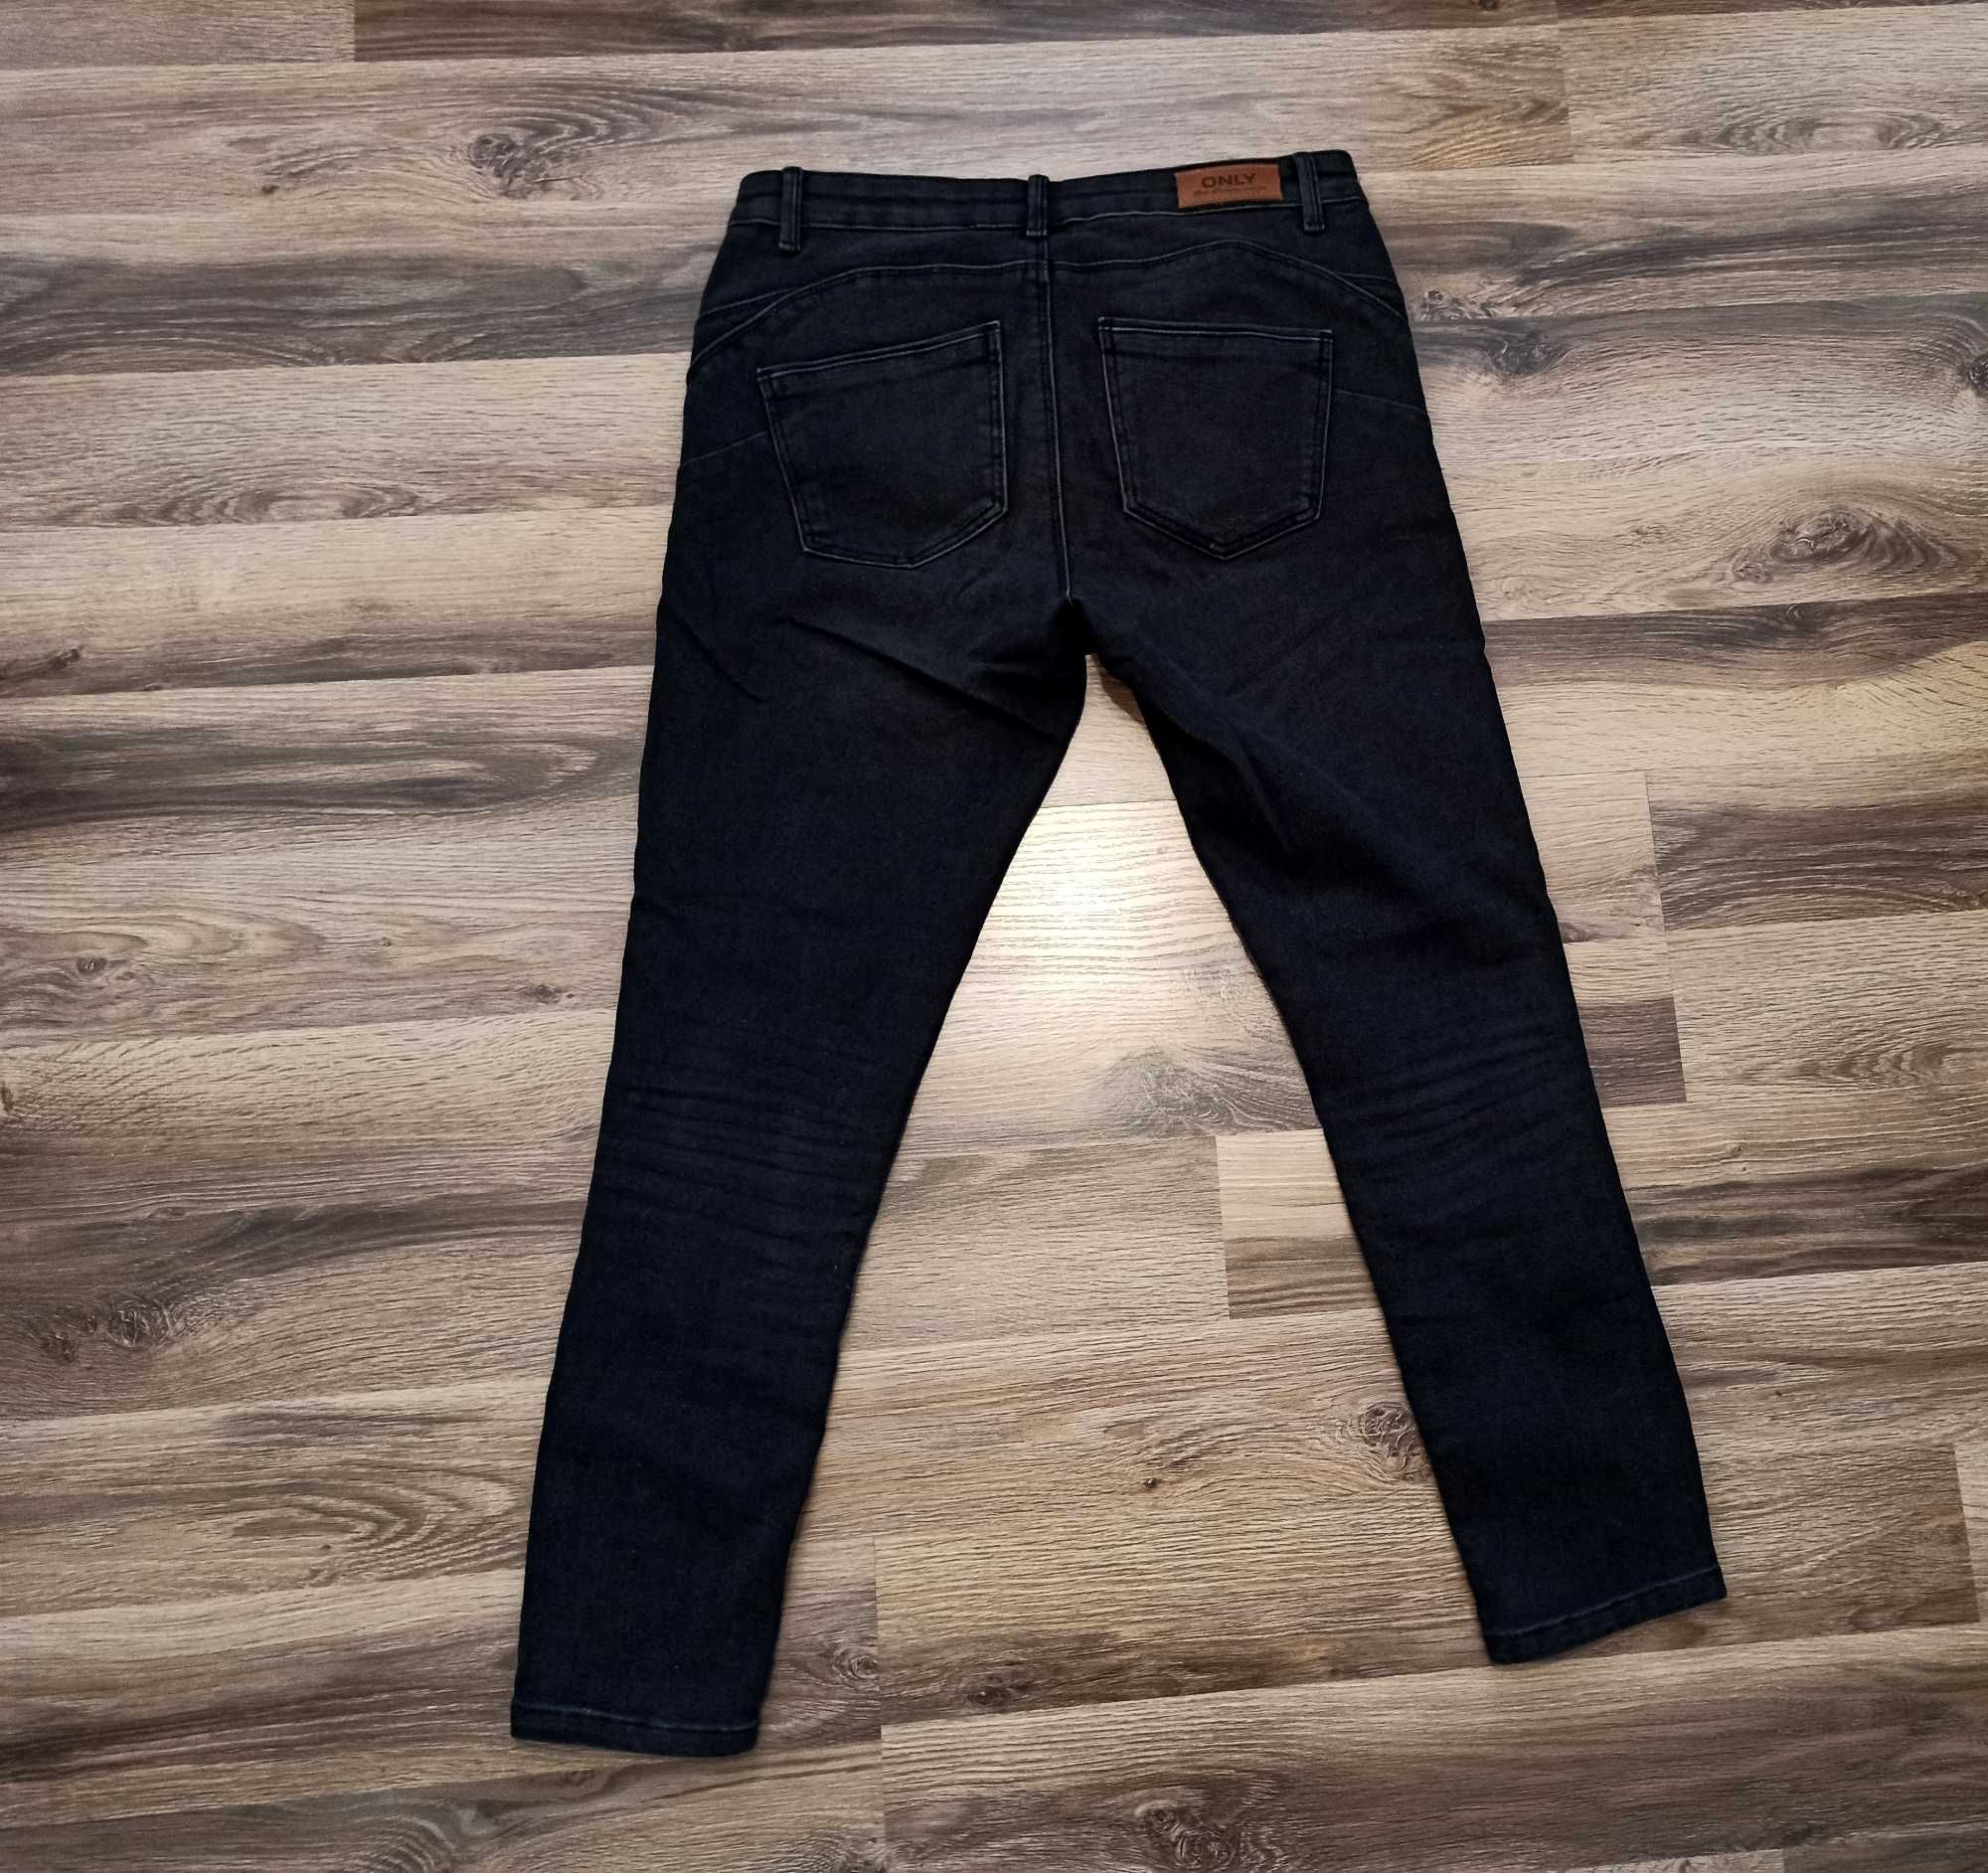 Nowe dżinsy/ jeansy Only - rozmiar 30/30